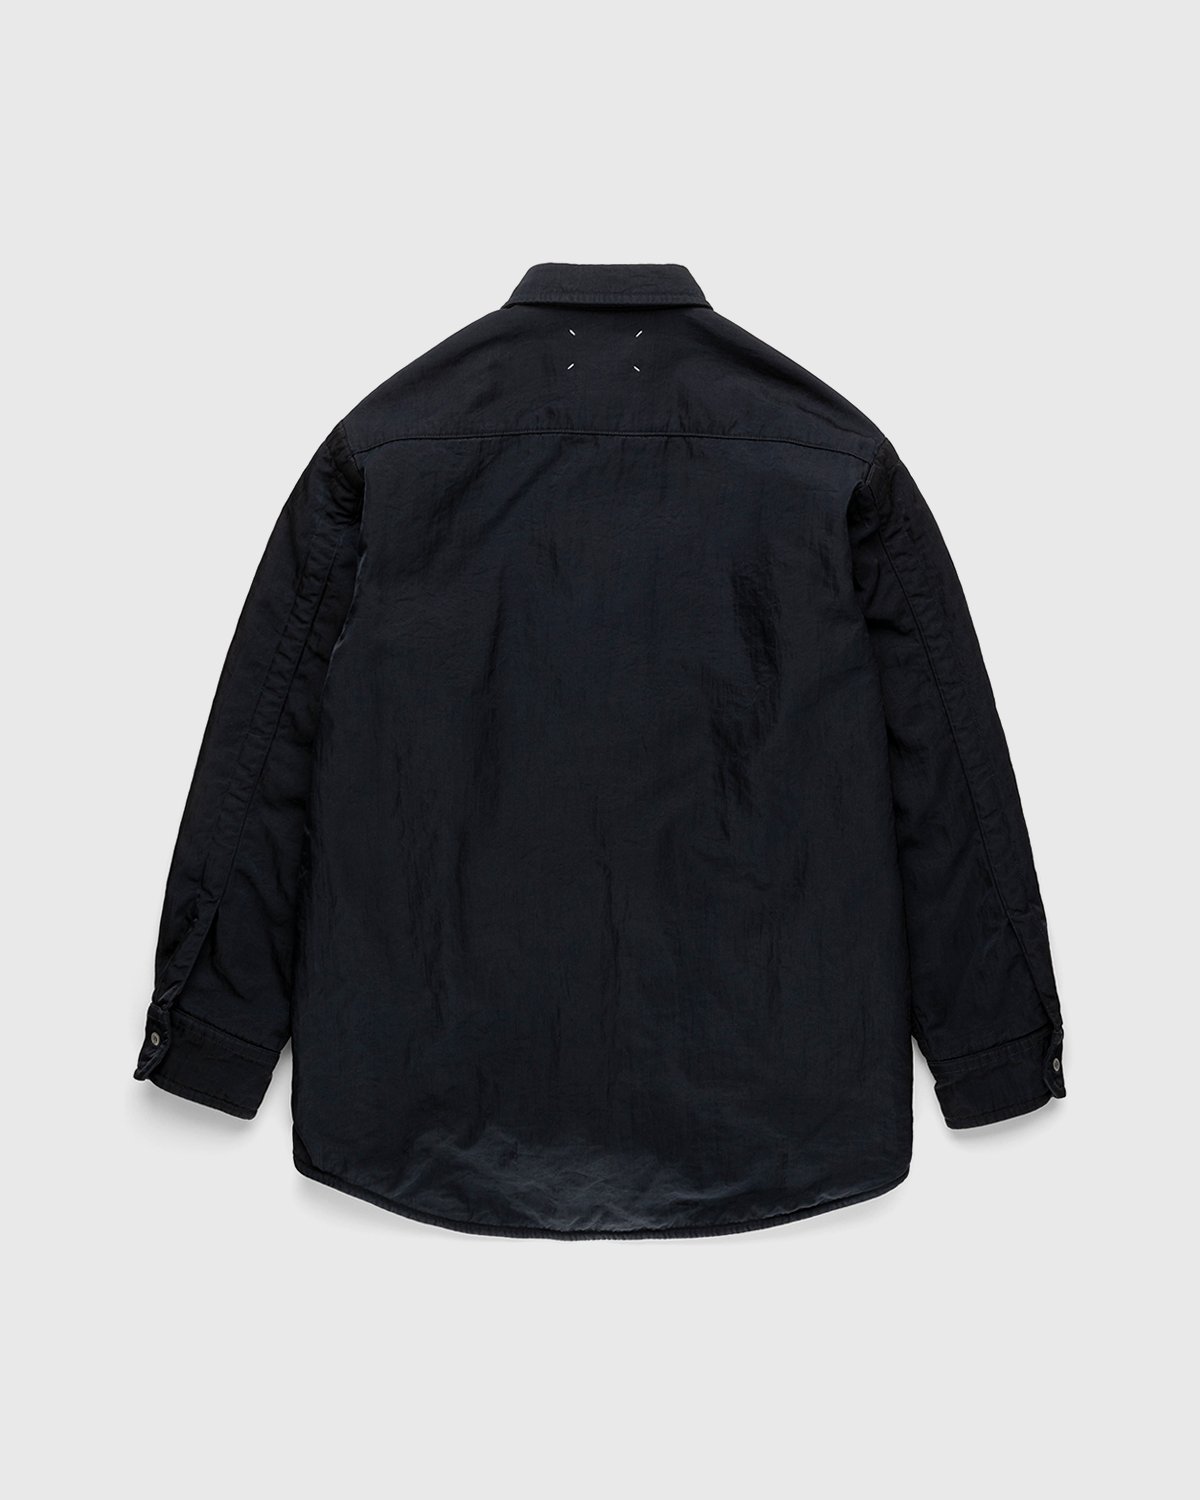 Maison Margiela - Oversized Nylon Jacket Navy - Clothing - Black - Image 2